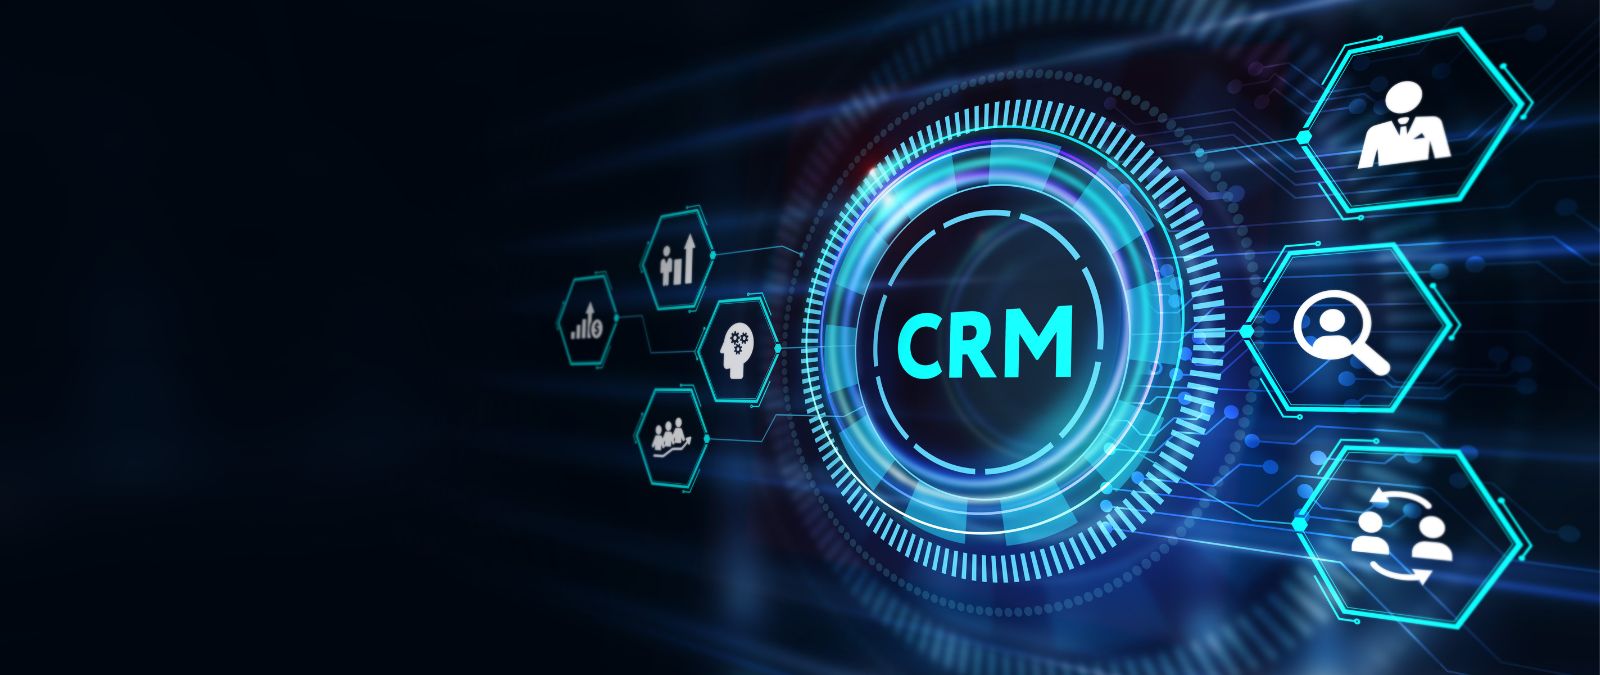 CRM: Eine digitale Anzeige, mit dem CRM-Schriftzug und mehreren Symbolen daneben.